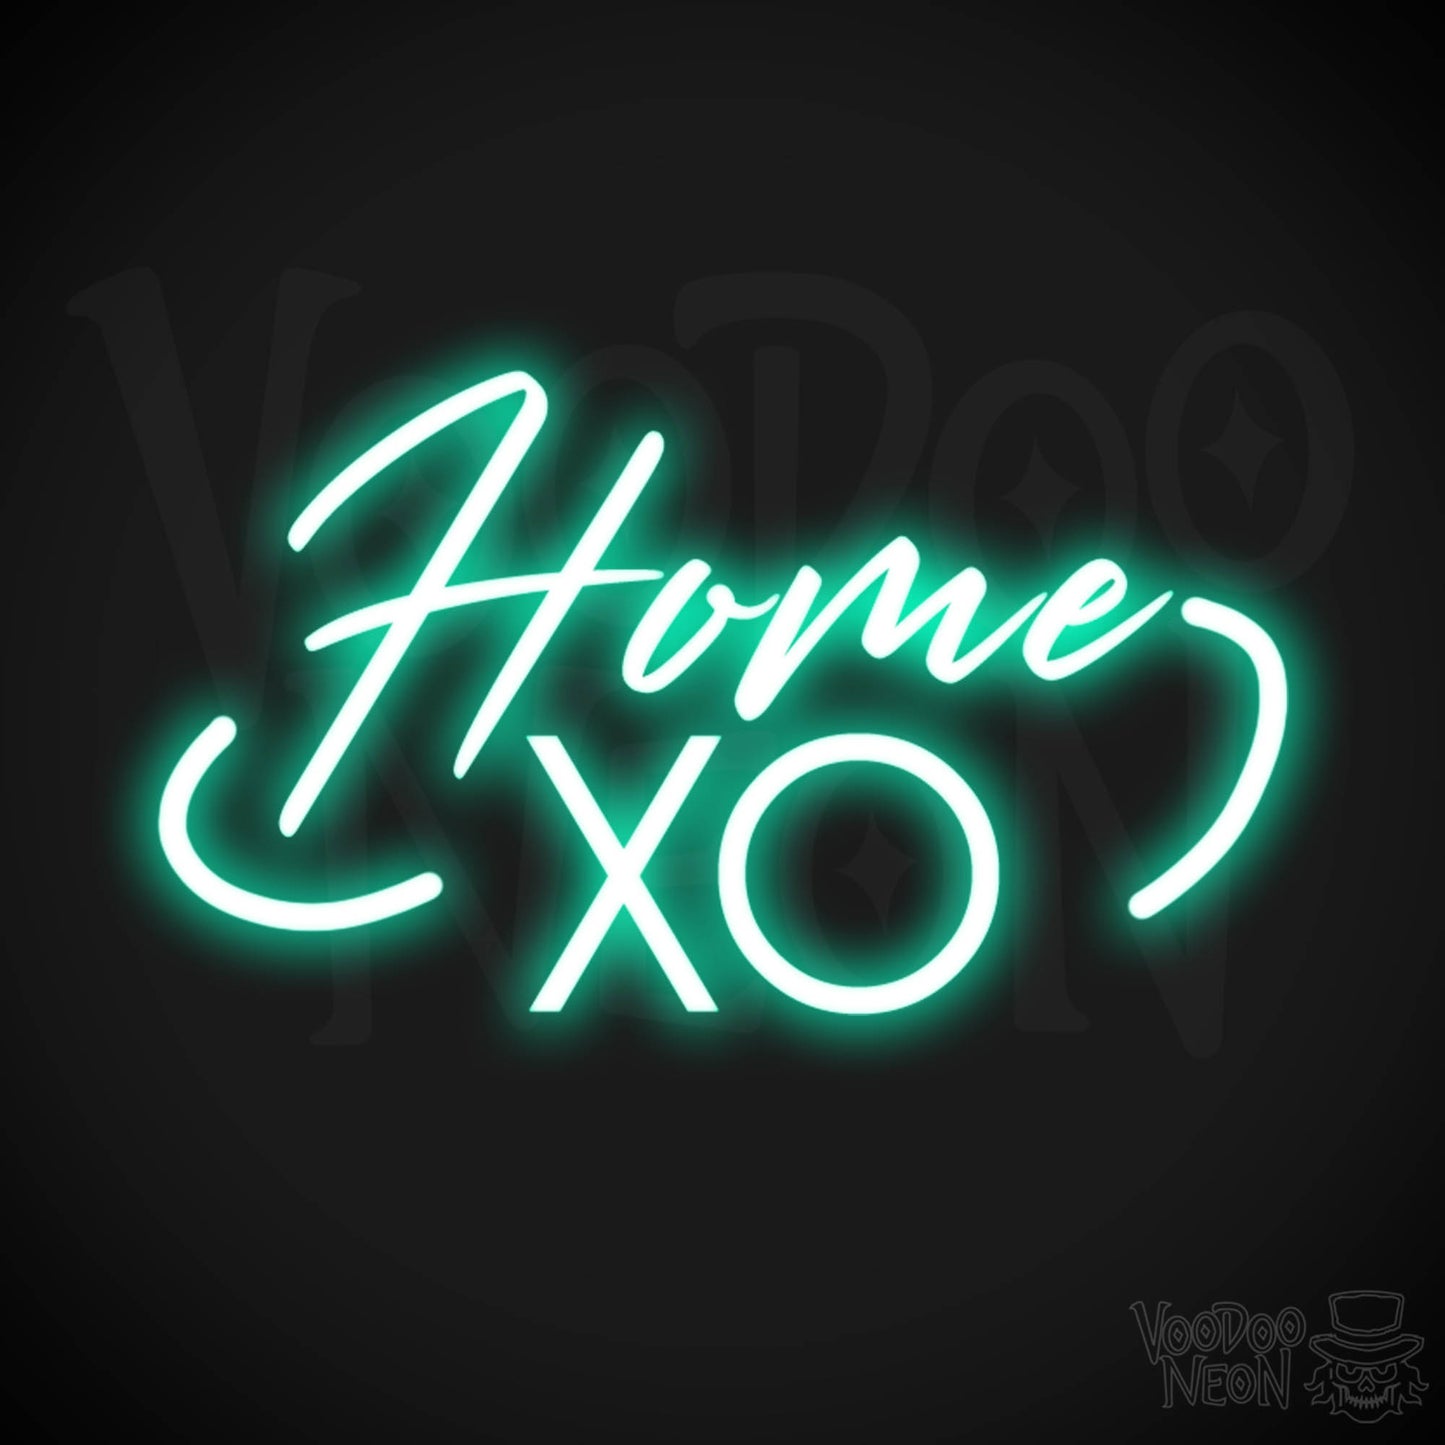 Home XO Neon Sign - Neon Home XO Sign - Wall Art - Color Light Green